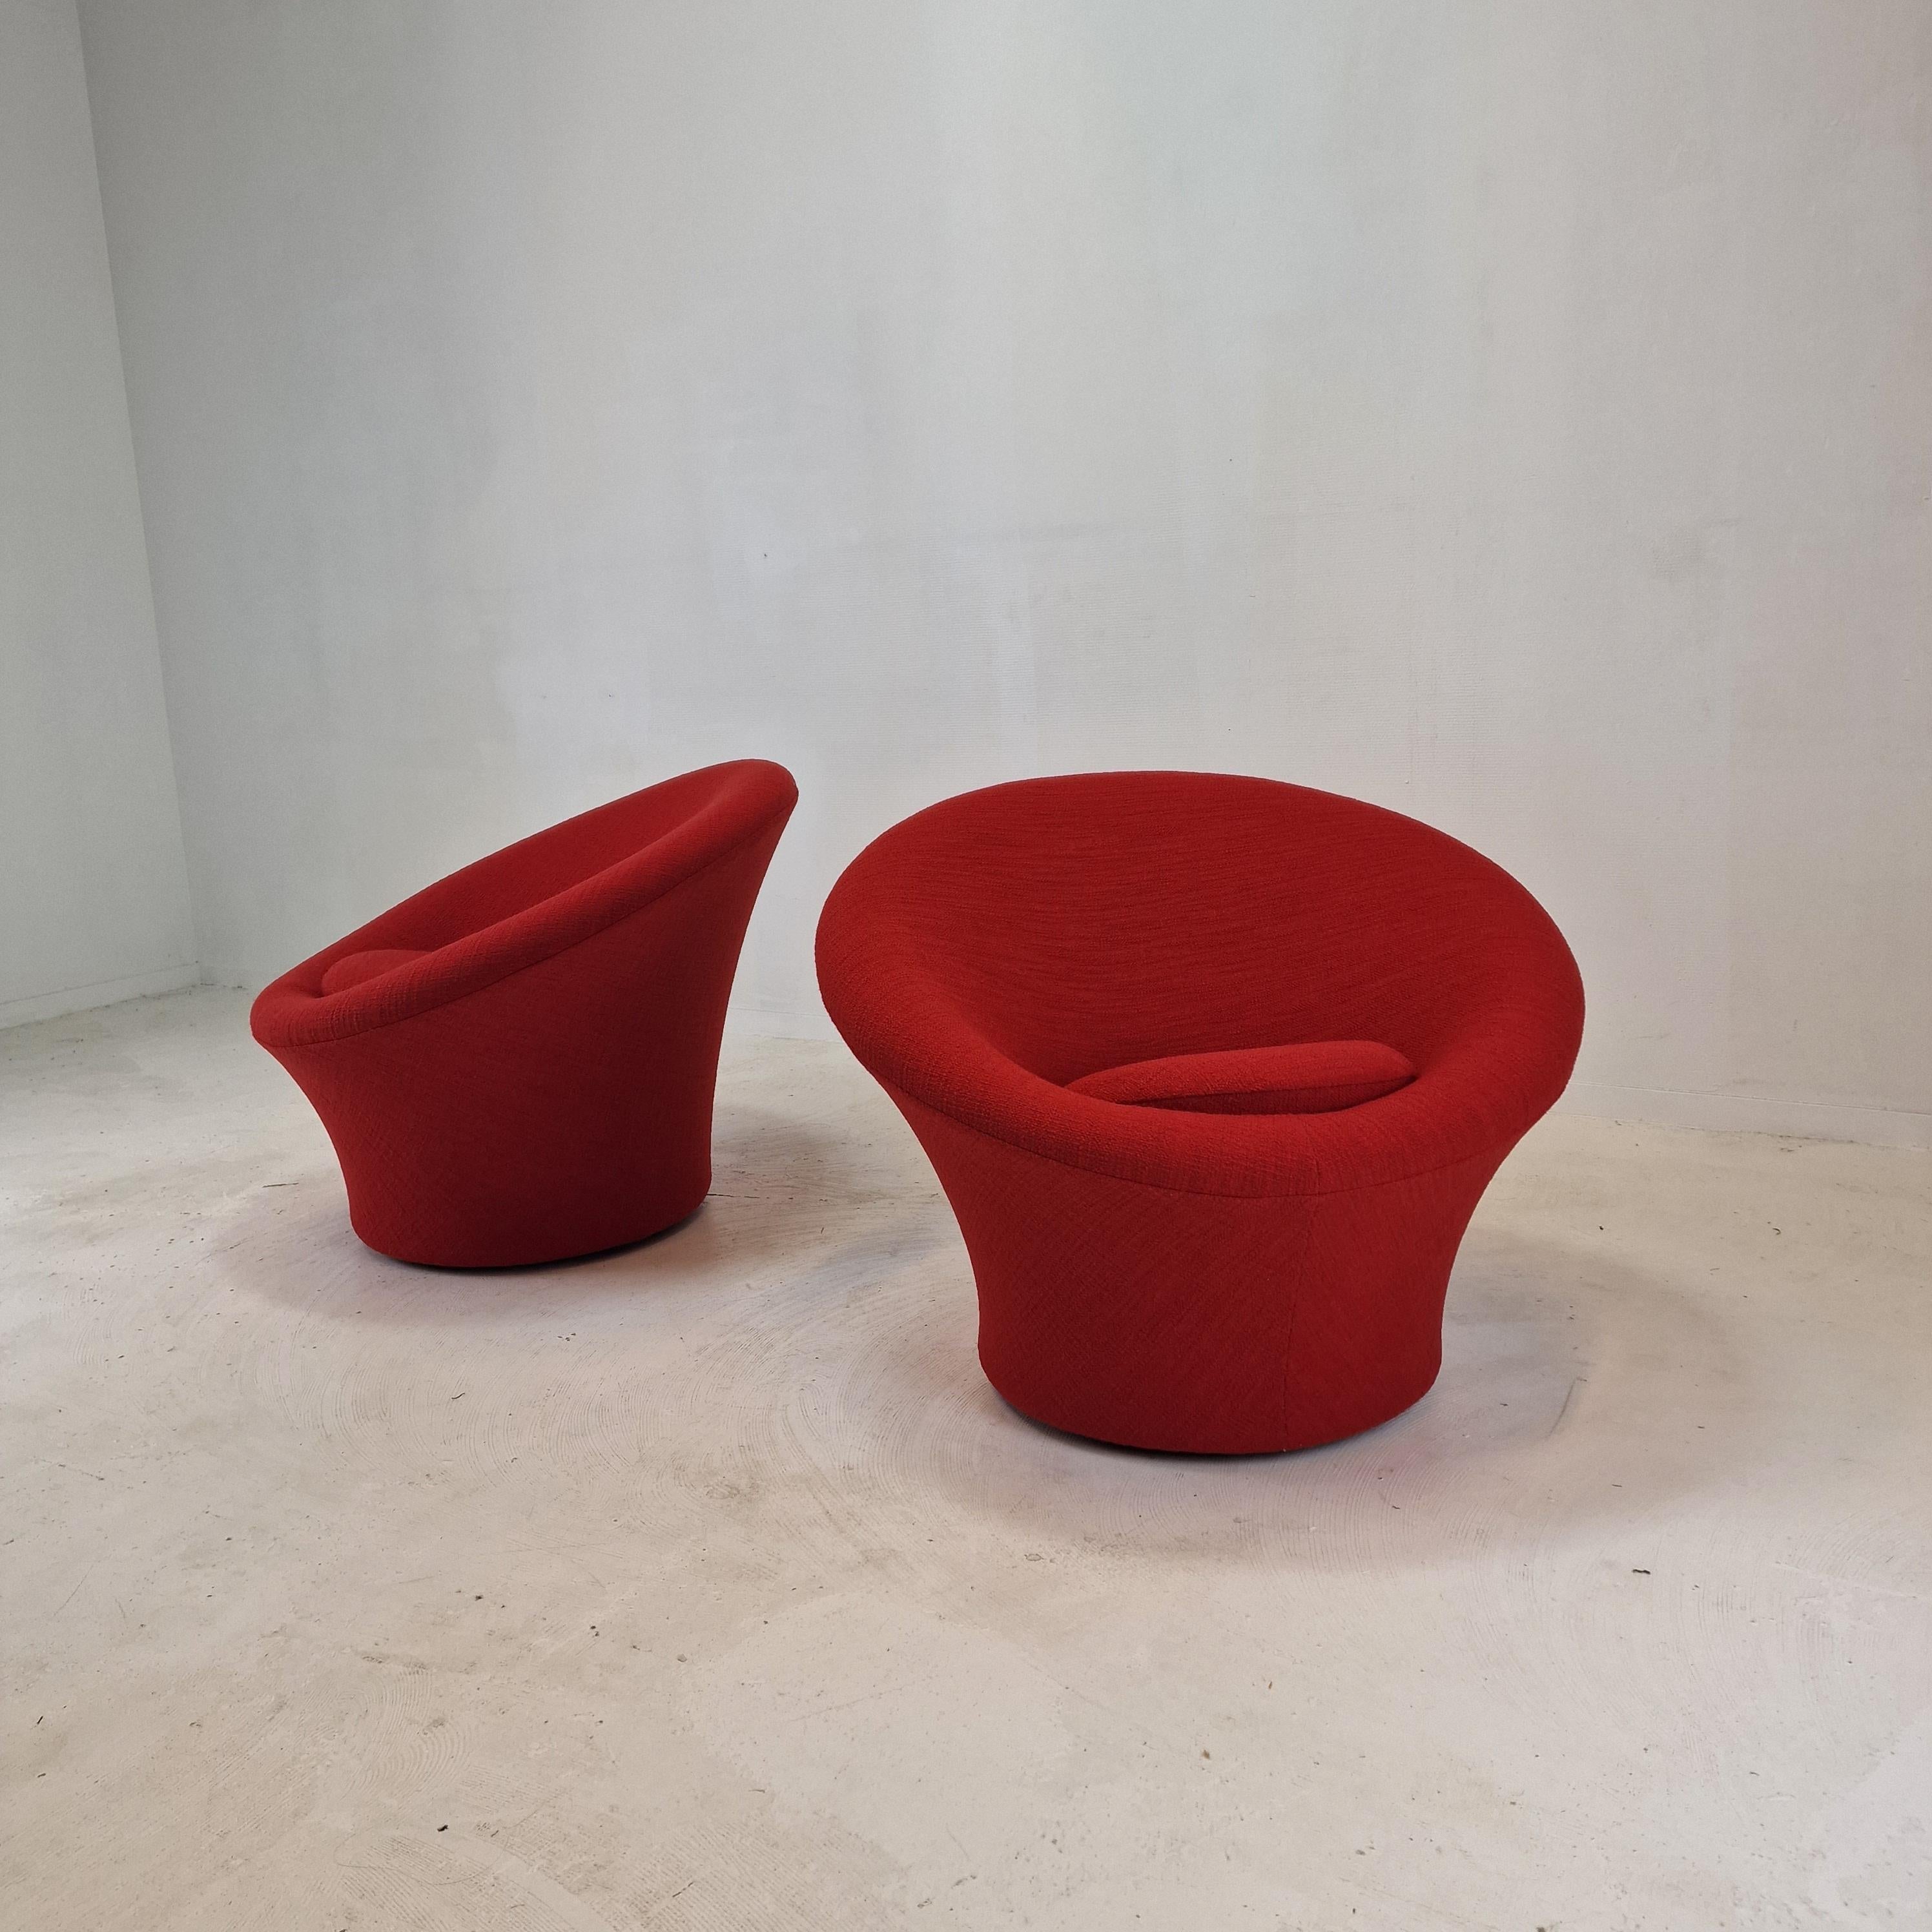 Sehr bequemer und gemütlicher Artifort Mushroom Stuhl, entworfen von Pierre Paulin in den 60er Jahren. 
Diese besonderen Stühle wurden in den 80er Jahren hergestellt.

Bezogen mit dem sehr exklusiven Stoff Dedar Italy.
Dieser Wollstoff hat eine